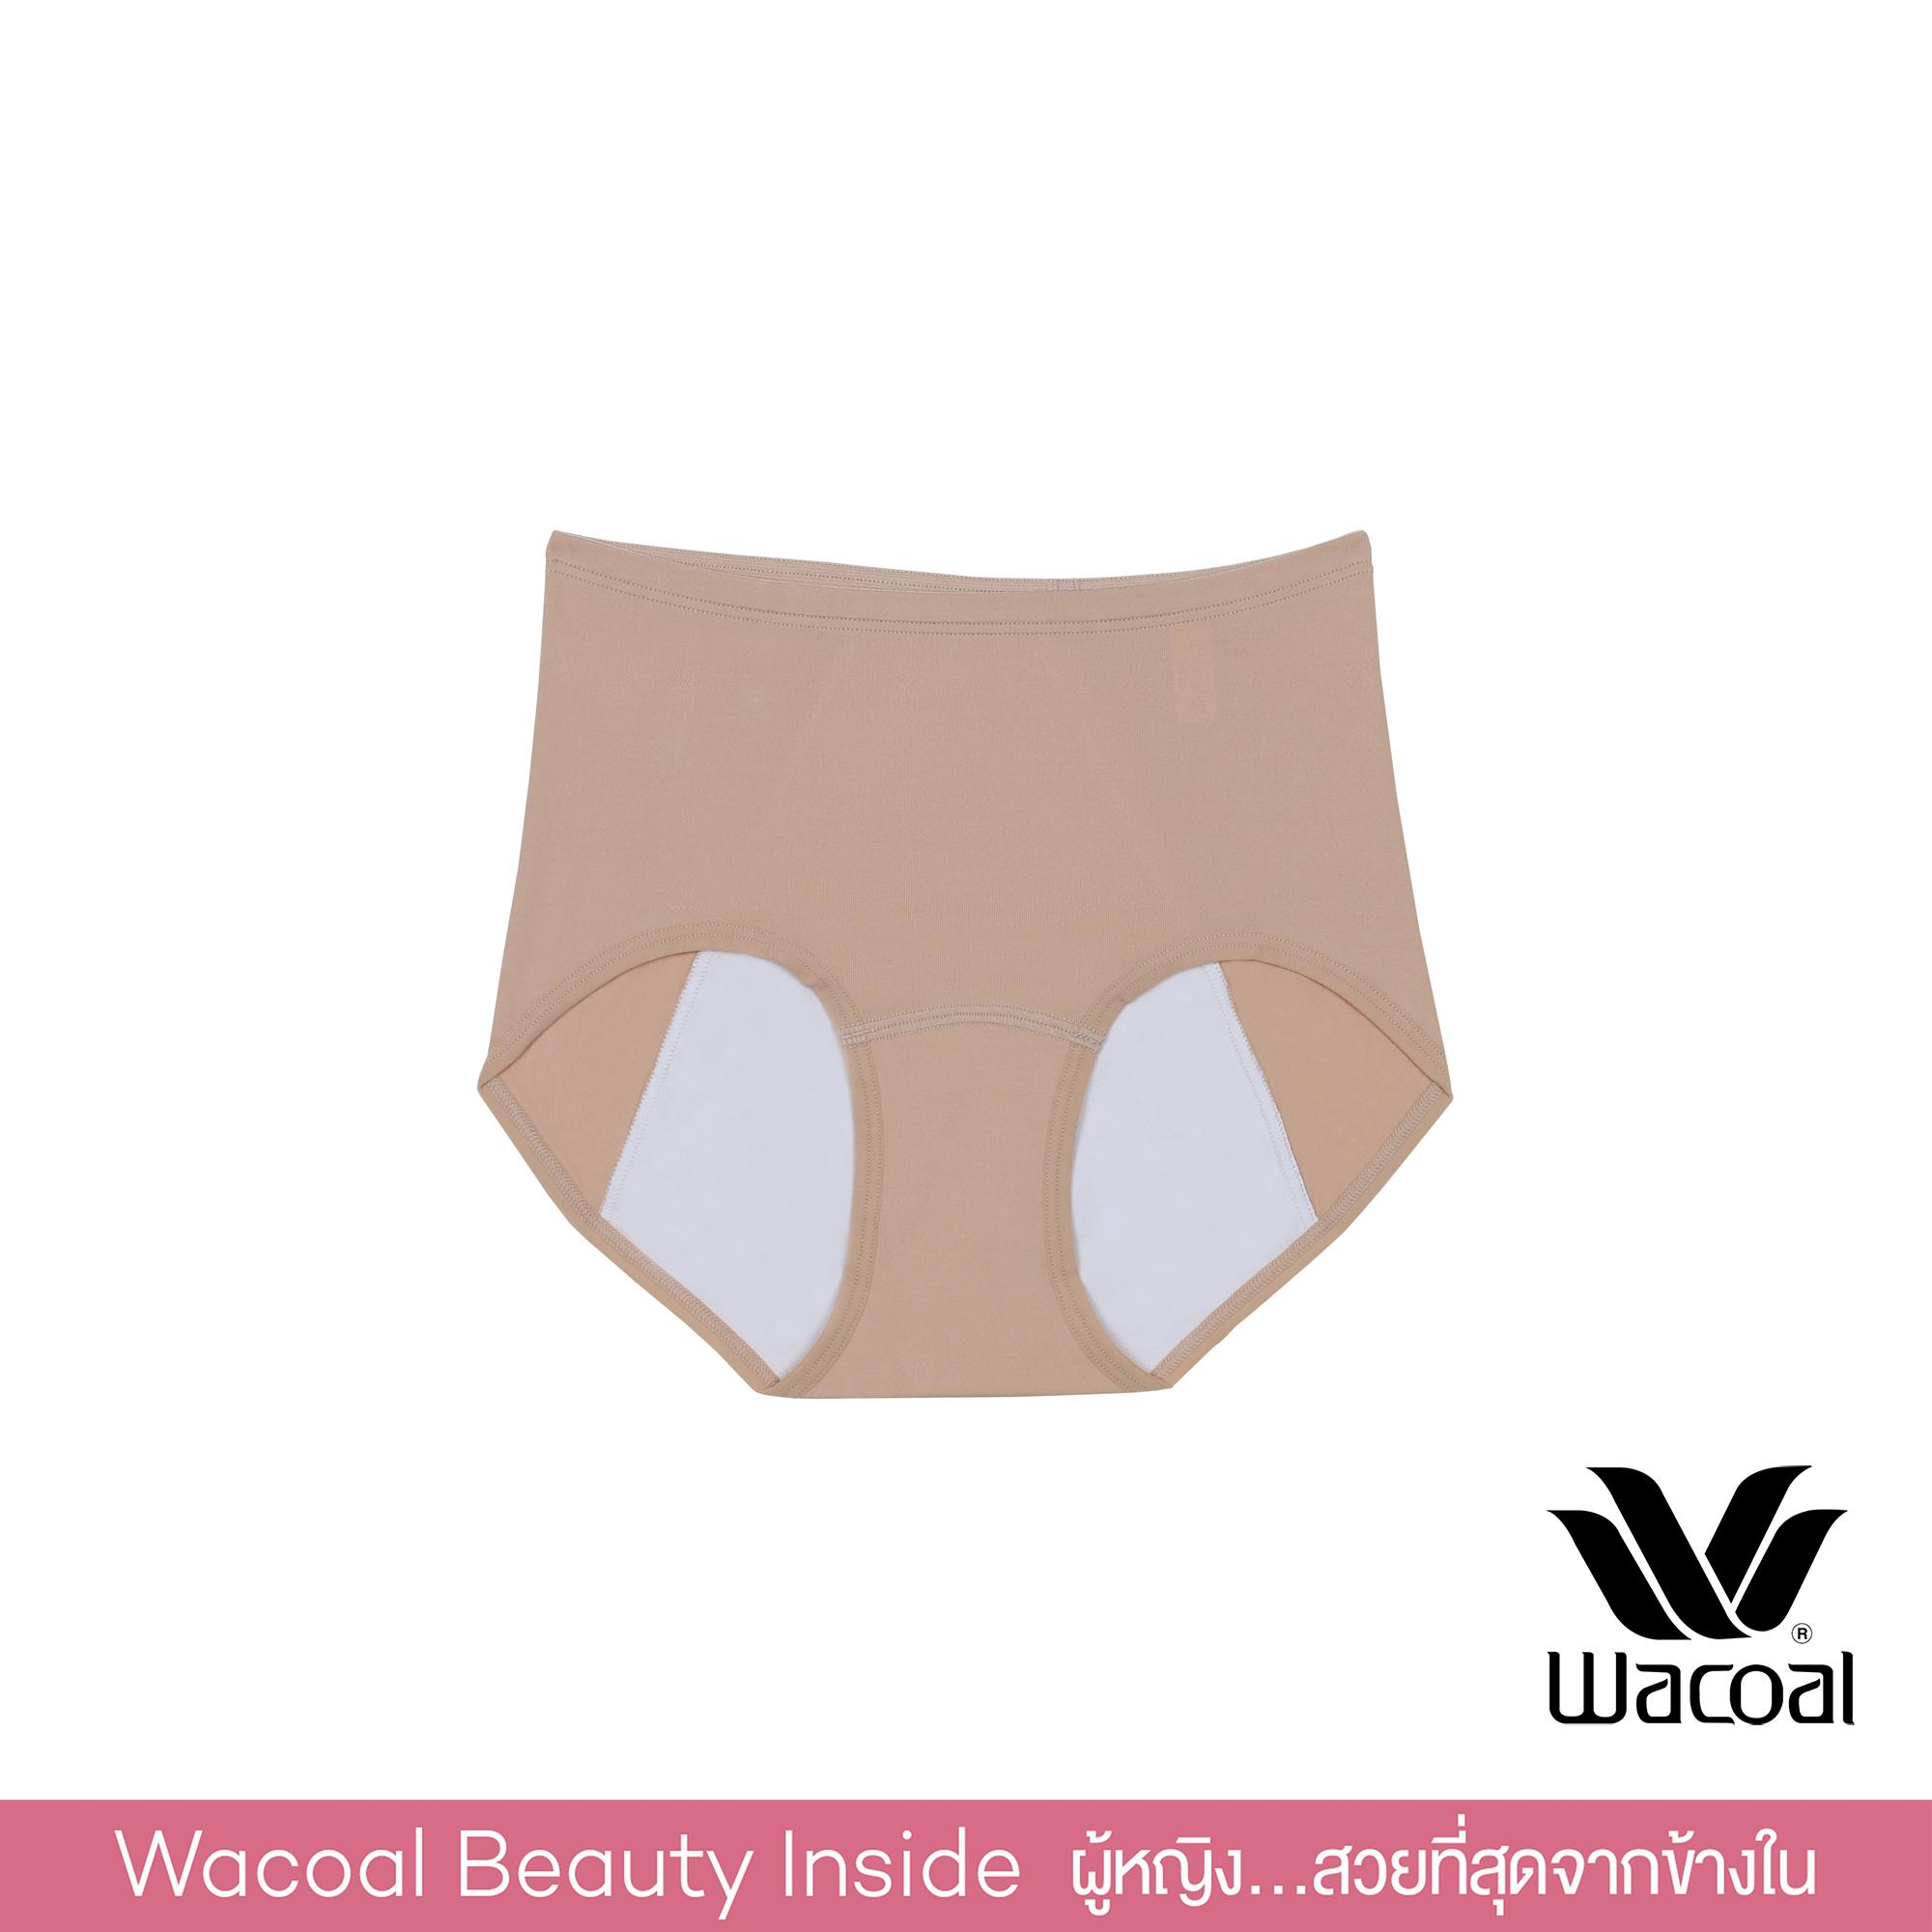 Wacoal Hygieni Night Short Panty กางเกงในอนามัย รูปแบบเต็มตัว - WU5041